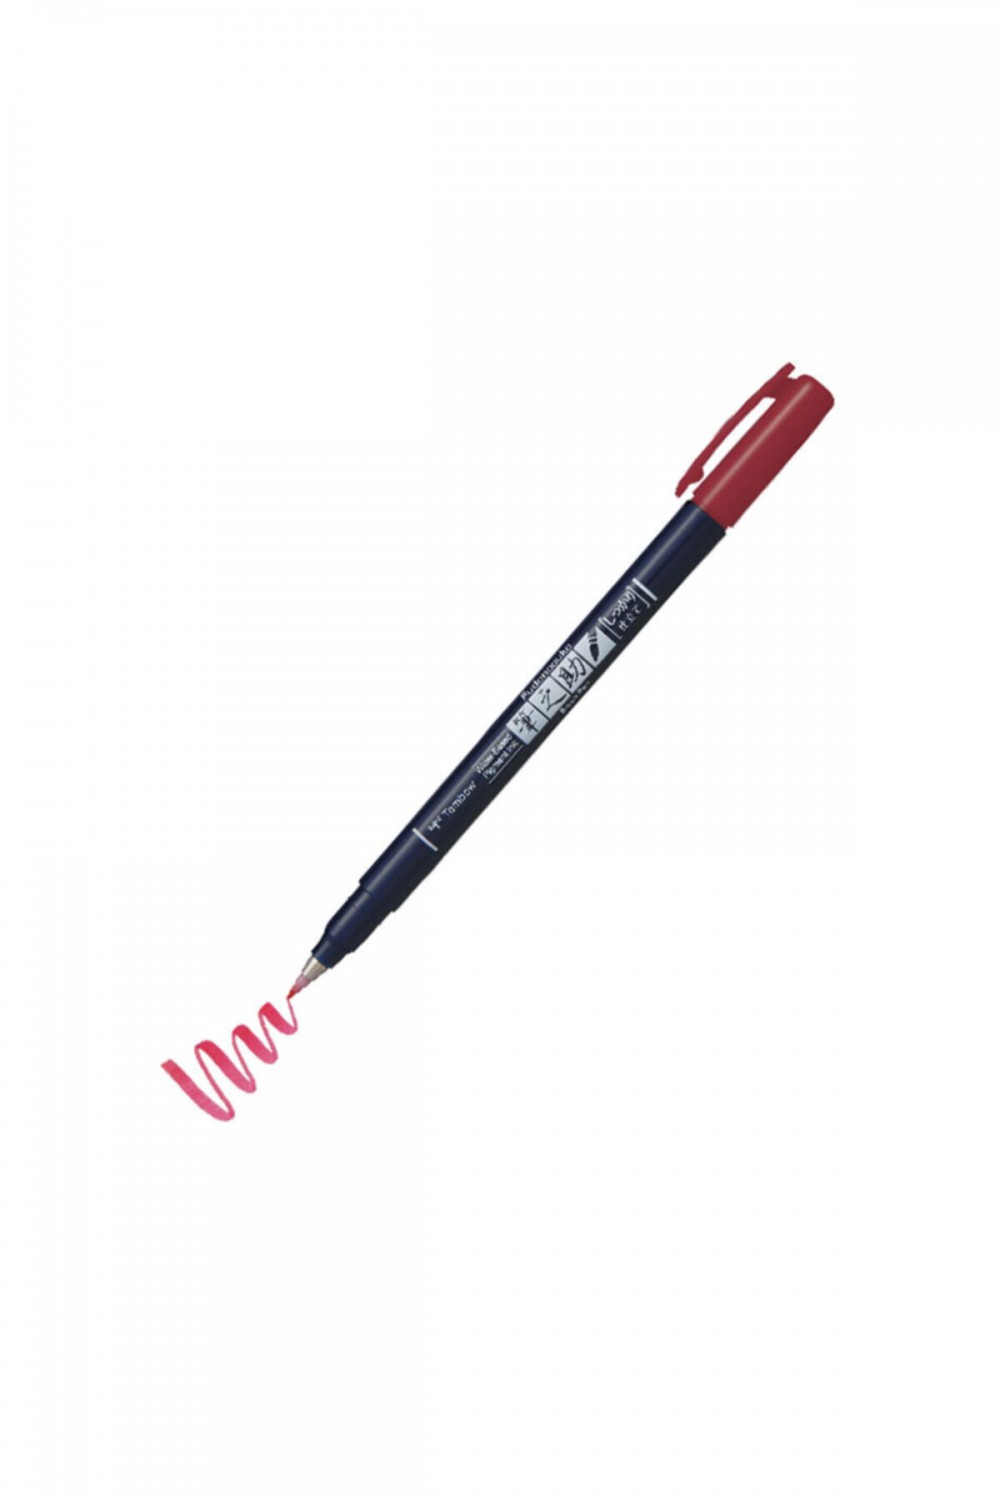 Tombow Fudenosuke Brush Pen Fırça Uçlu Kalem Sert Uç - Kırmızı